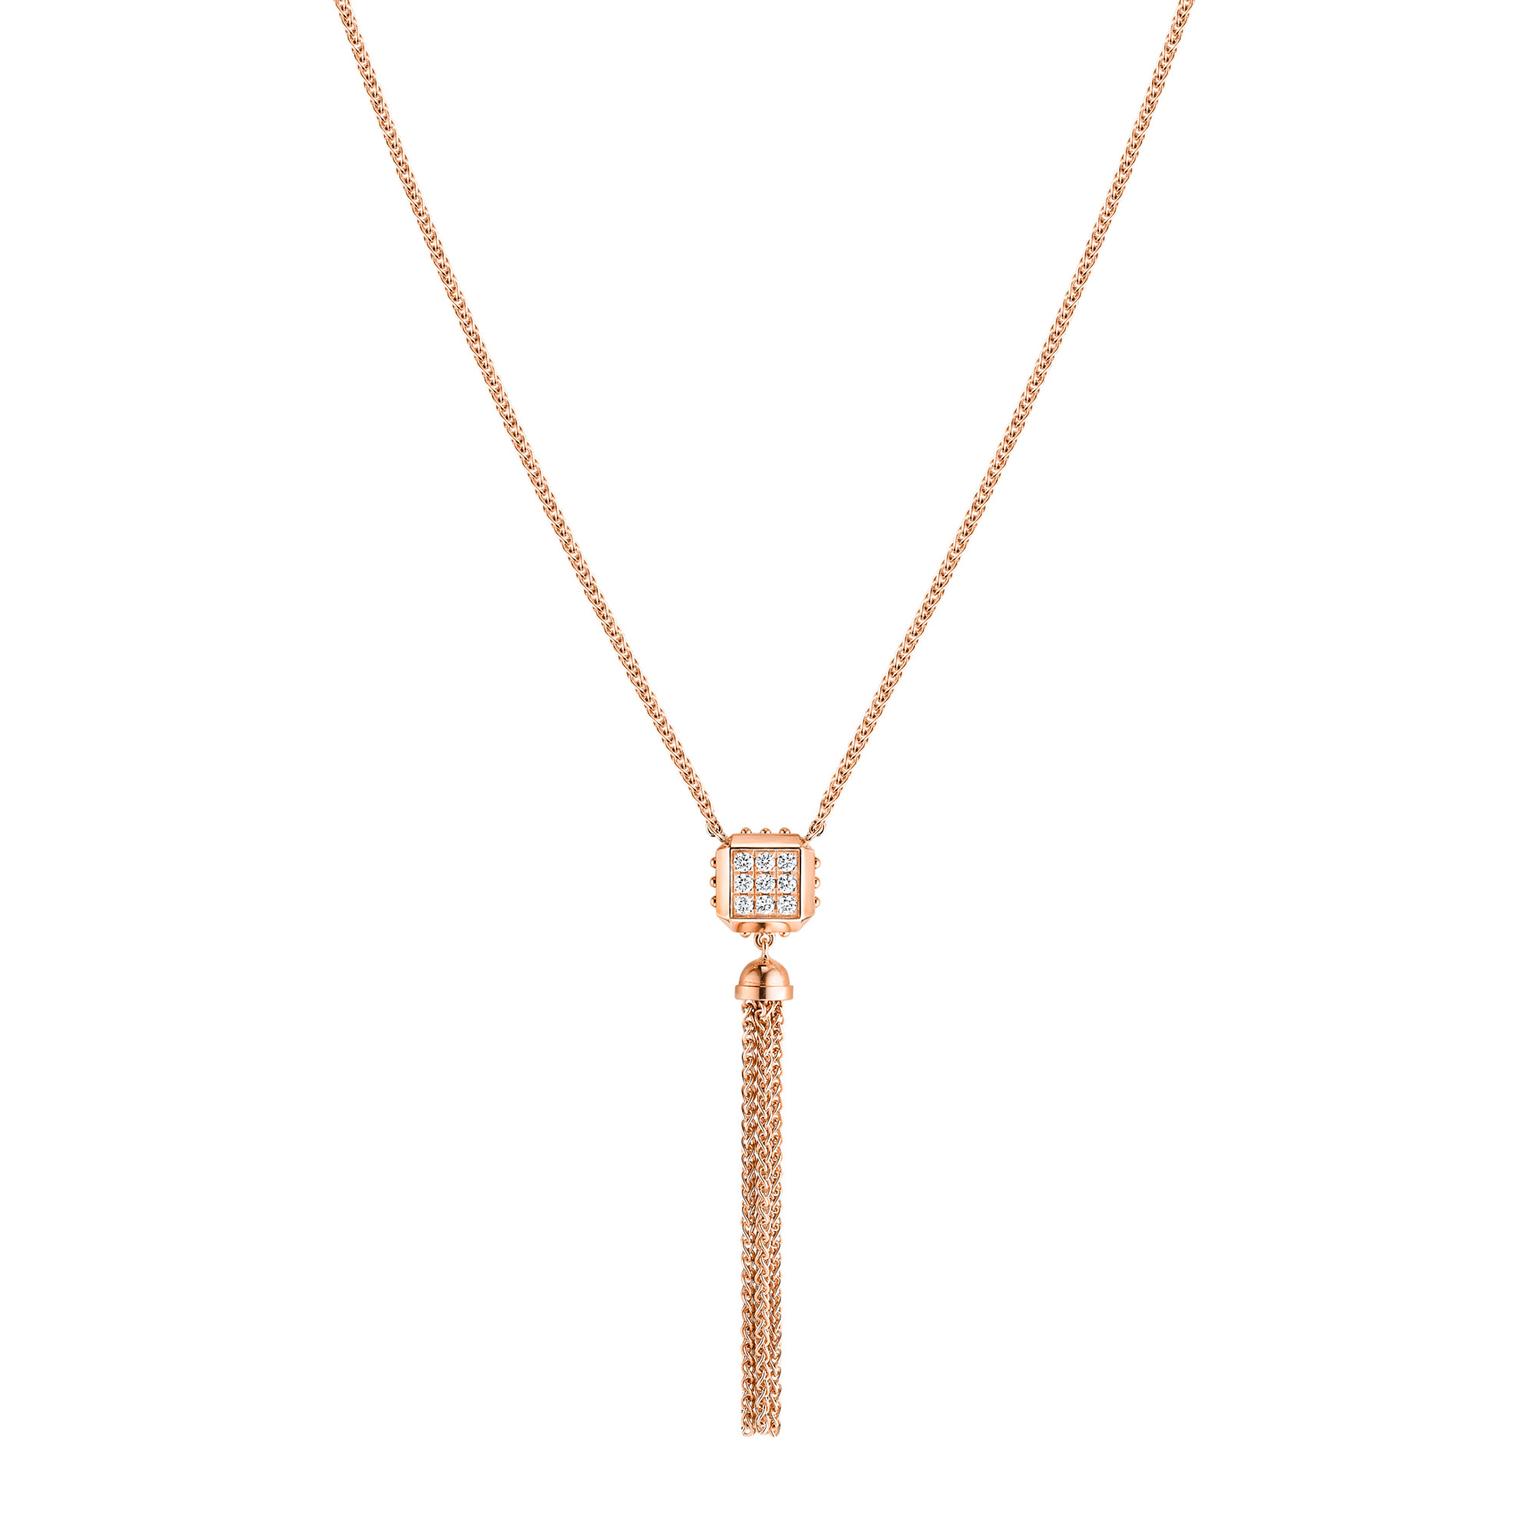 Emprise pink gold necklace, Louis Vuitton